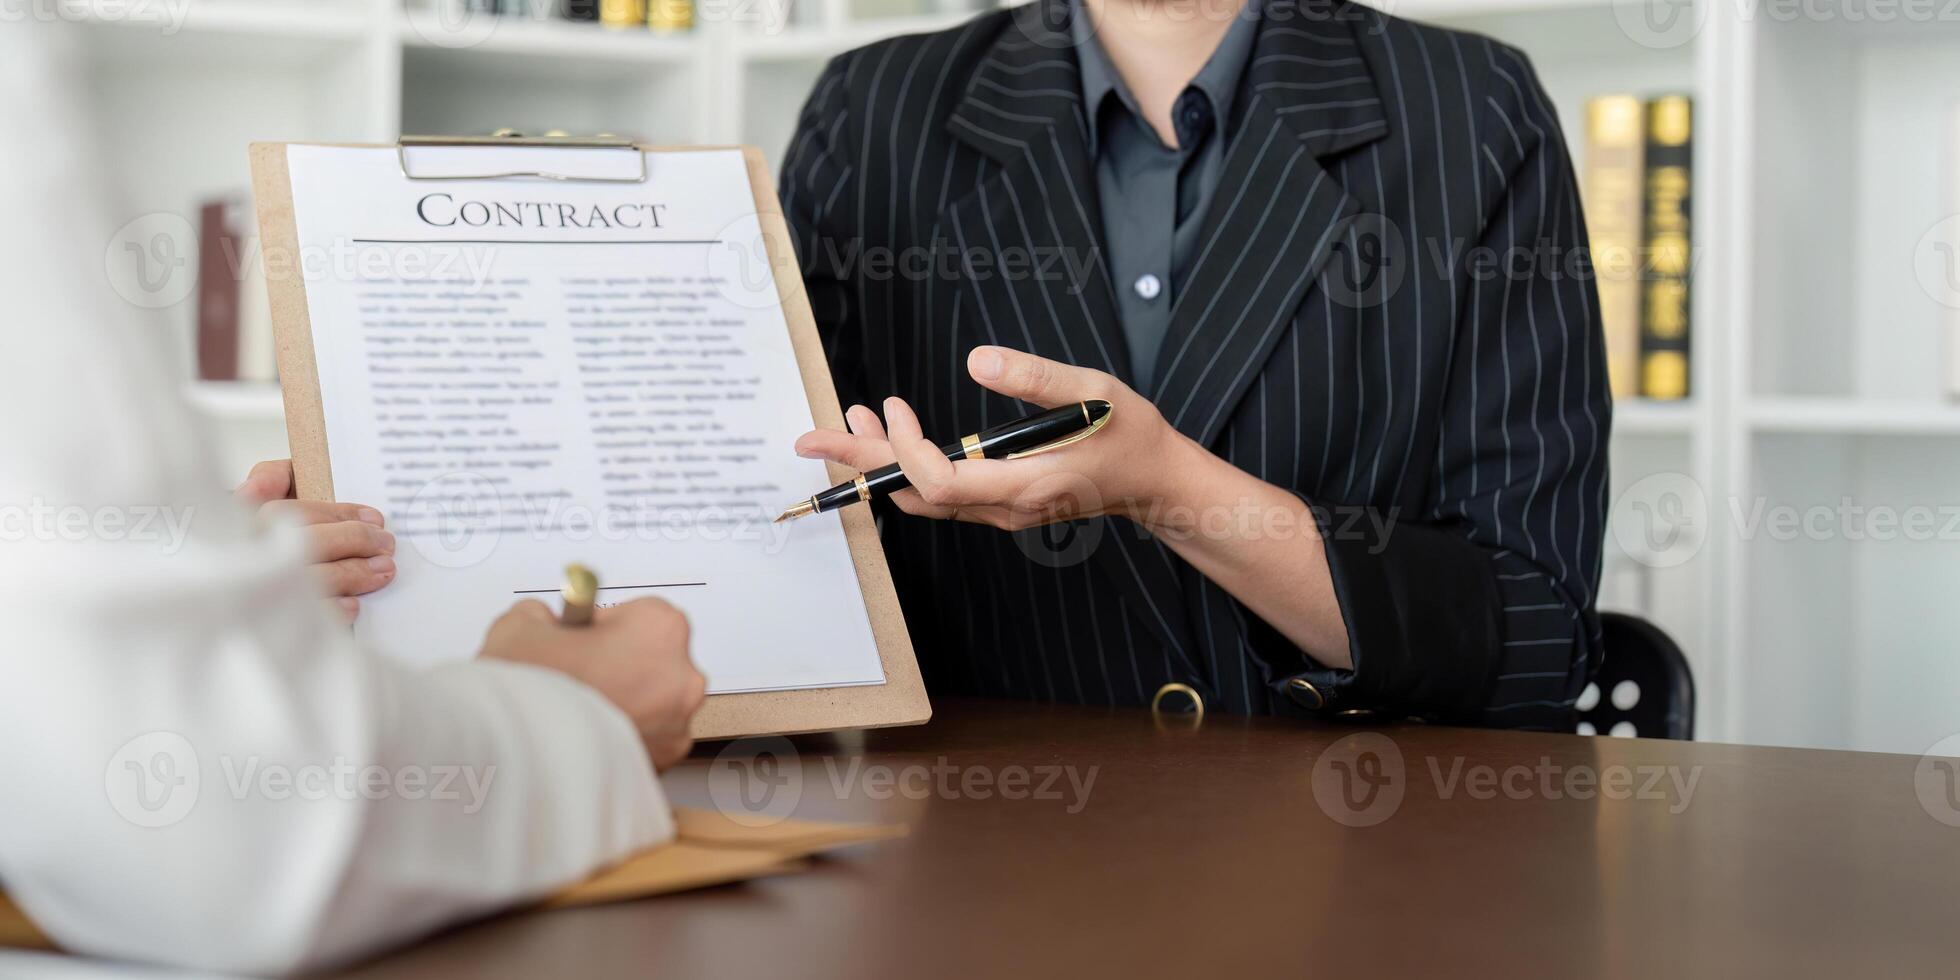 contrato de rebaja estaba en el mesa en el abogado oficina el empresa contratado el abogado oficina como un legal tutor y sequía el contrato entonces ese el cliente podría señales el Derecha contrato foto